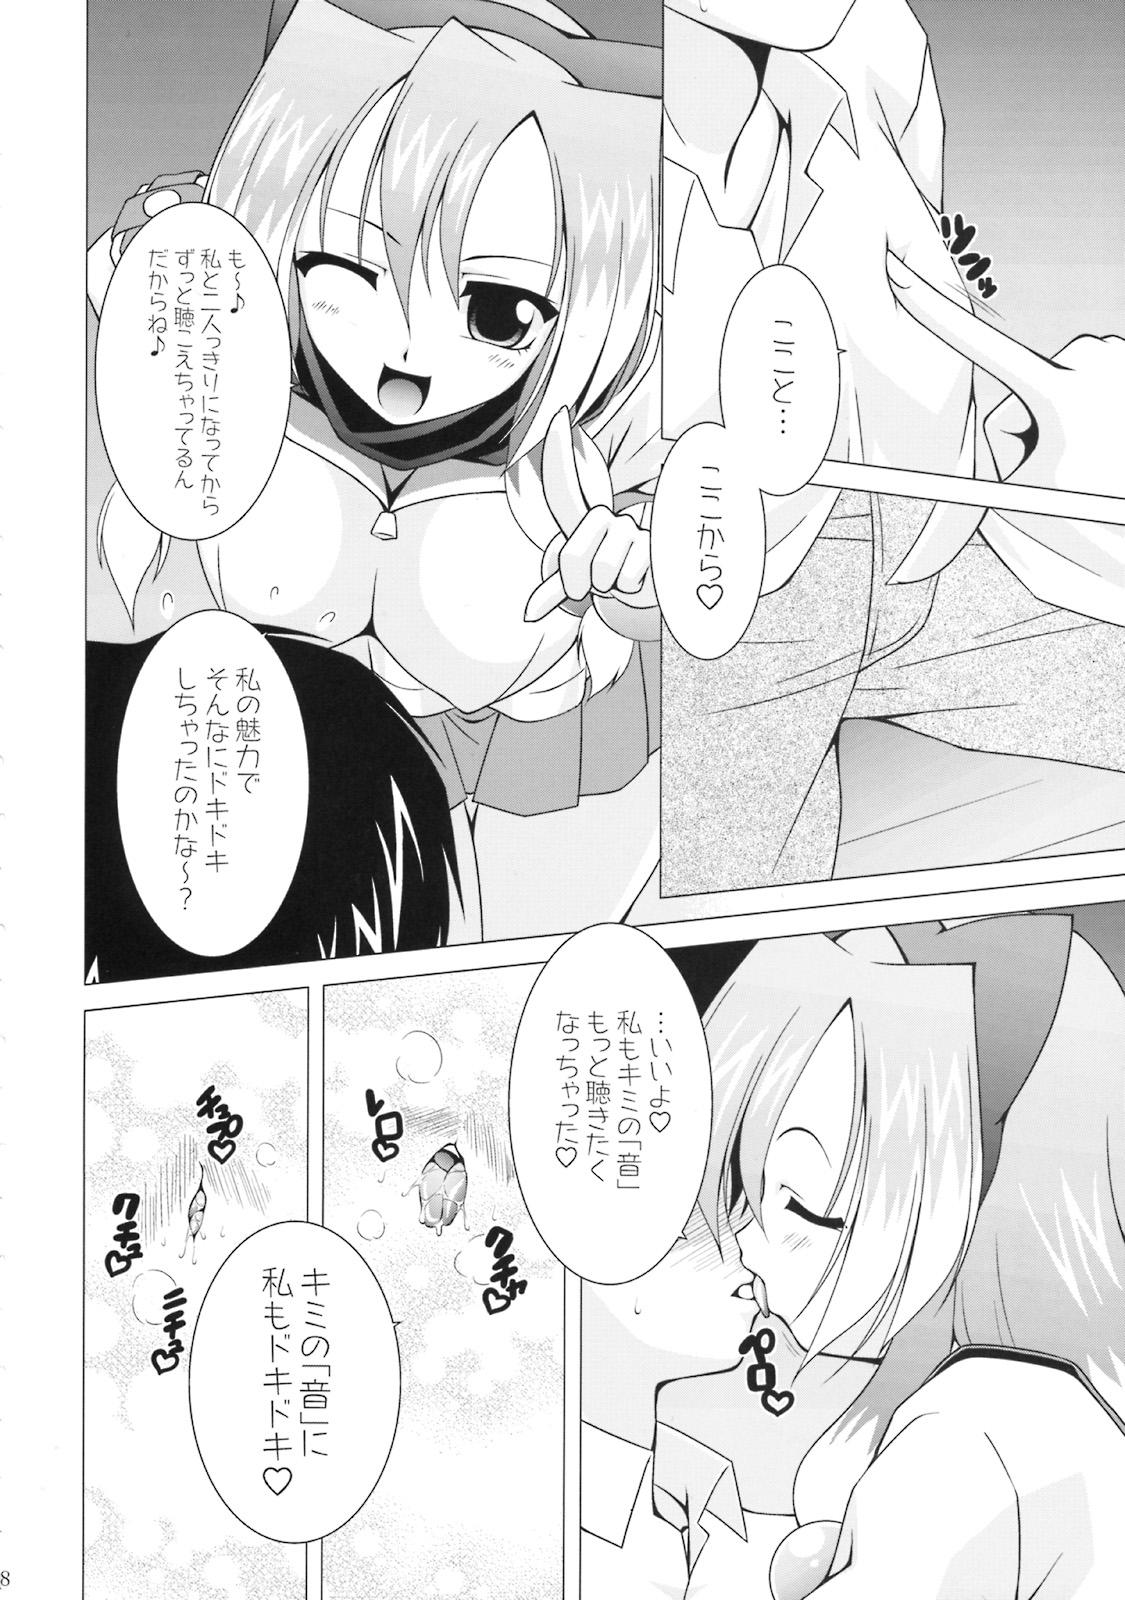 Doggystyle Porn NAMA☆ASHI Wonderful! - Arcana heart Mofos - Page 5